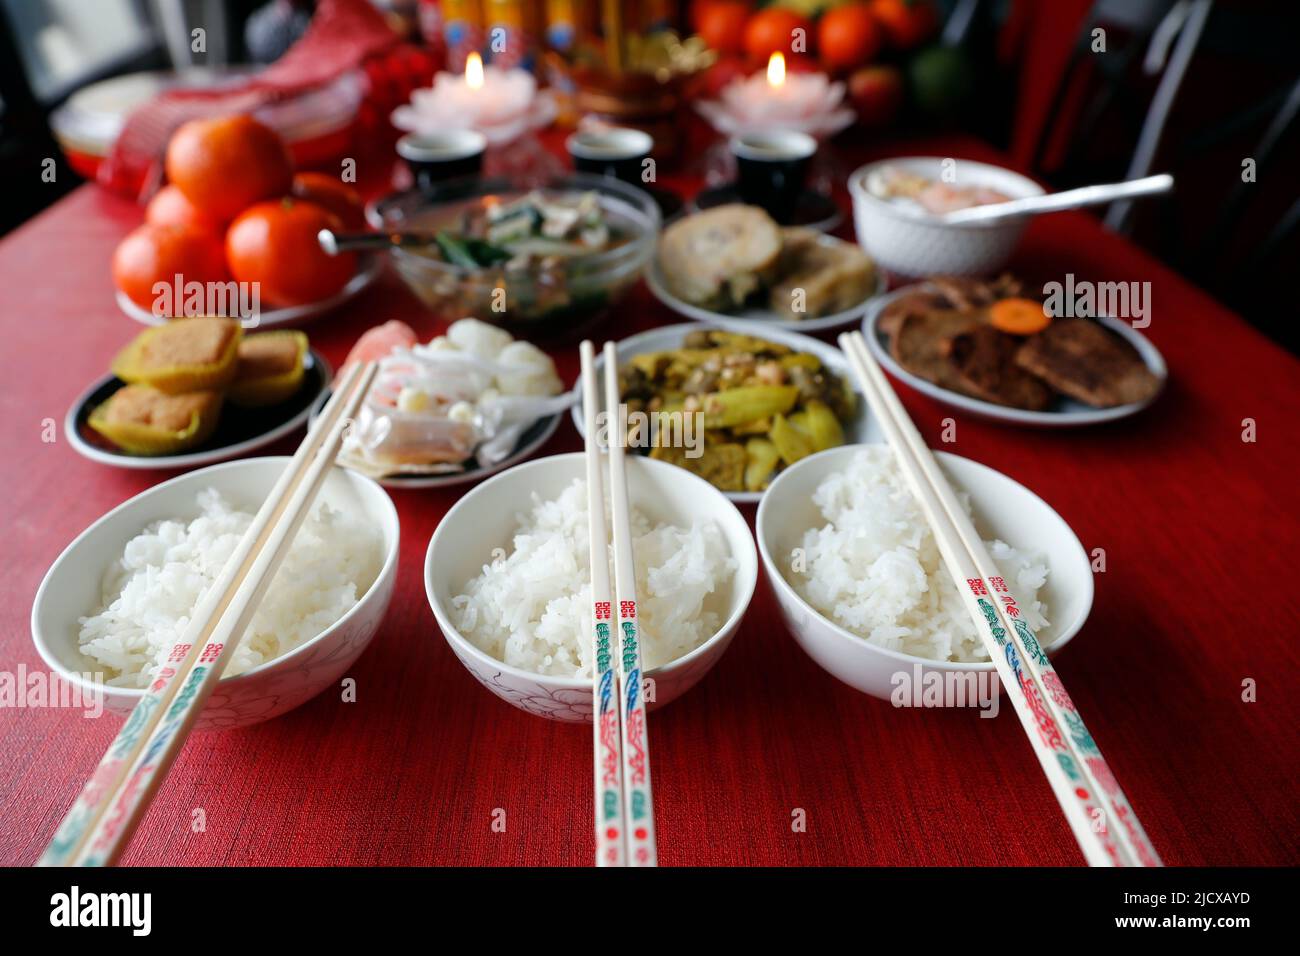 Nouvel an lunaire chinois, fête de la Tet vietnamienne, nourriture et offrandes sur table, religion à la maison, haute Savoie, France, Europe Banque D'Images